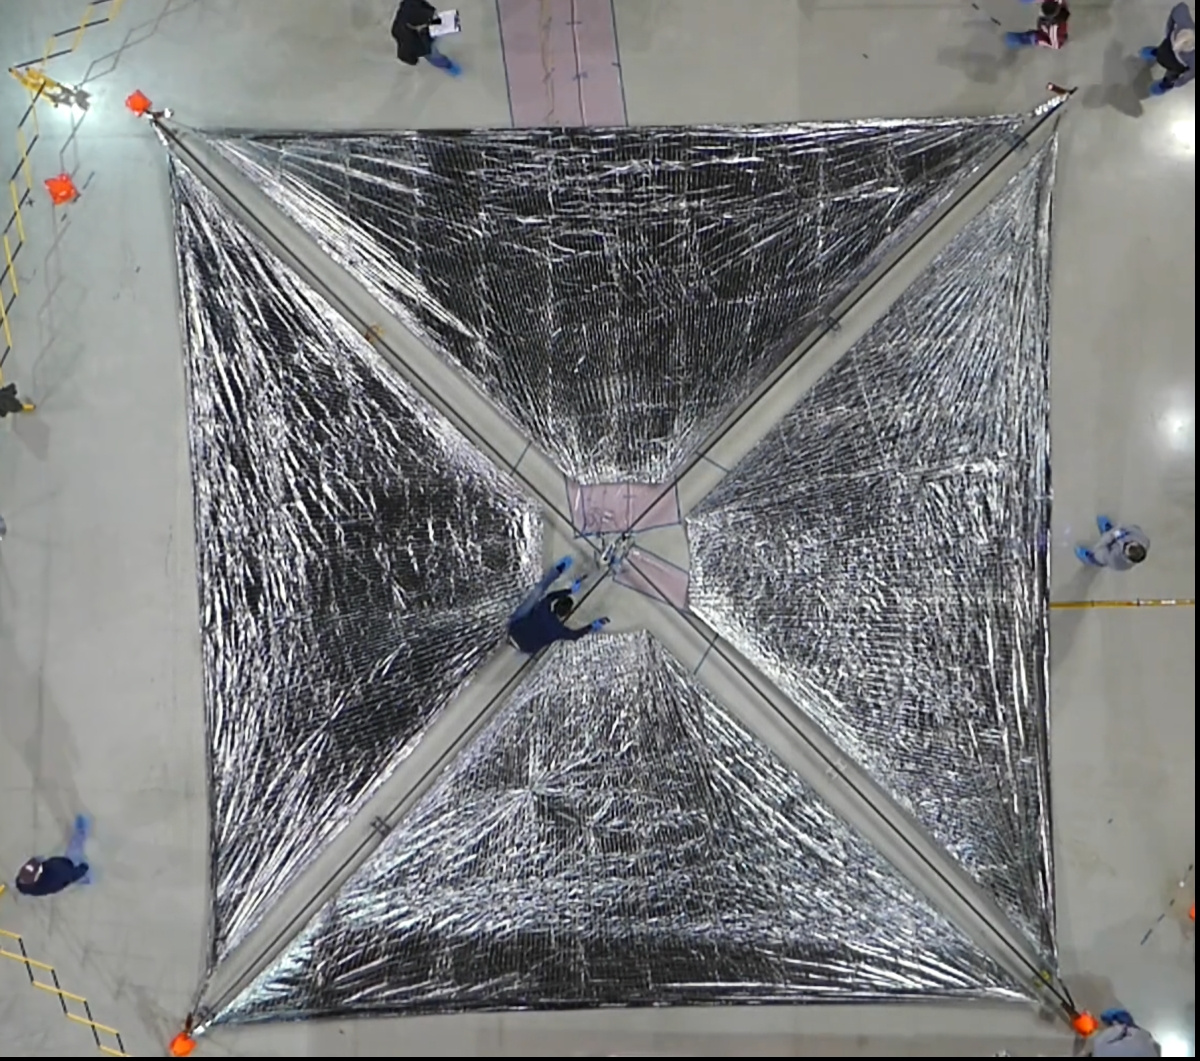 NASAラングレー研究所のエンジニアが、ACS3のソーラーセイルの展開をテストしている。展開されたソーラーセイルは一辺が約9m。太陽輻射圧は小さいため、効率よく推力を発生させるためにはソーラーセイルは大きくなければならない（出典：NASA）